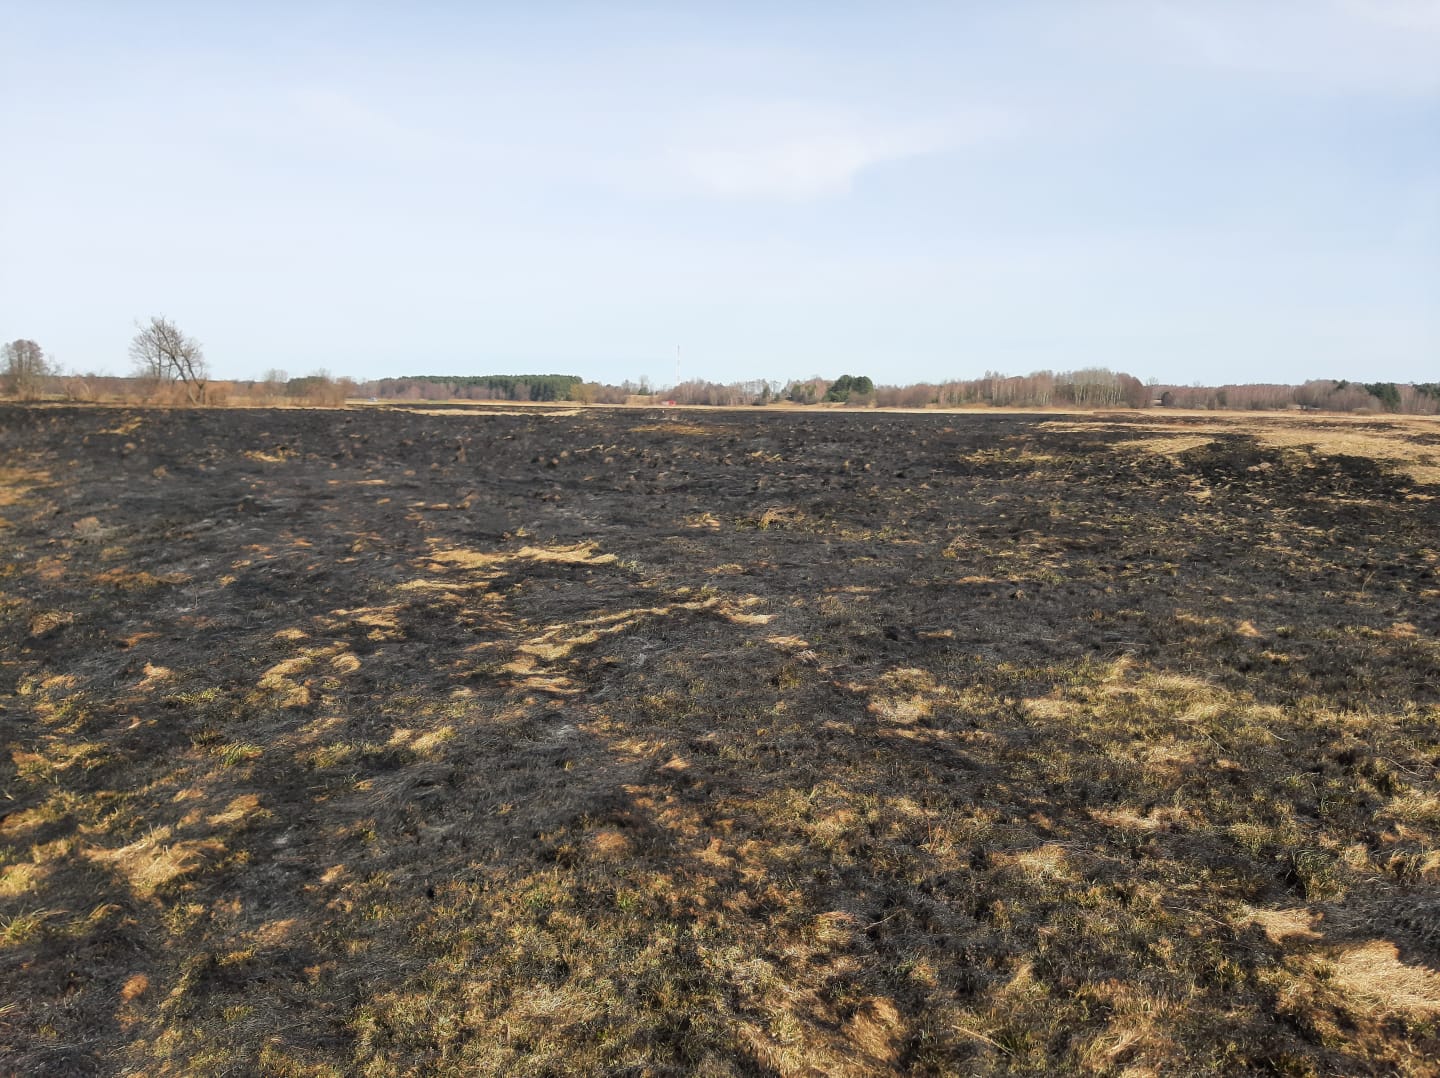 Ponad 95% wszystkich pożarów w ostatnim czasie w powiecie lubartowskim to pożary traw (zdjęcia)